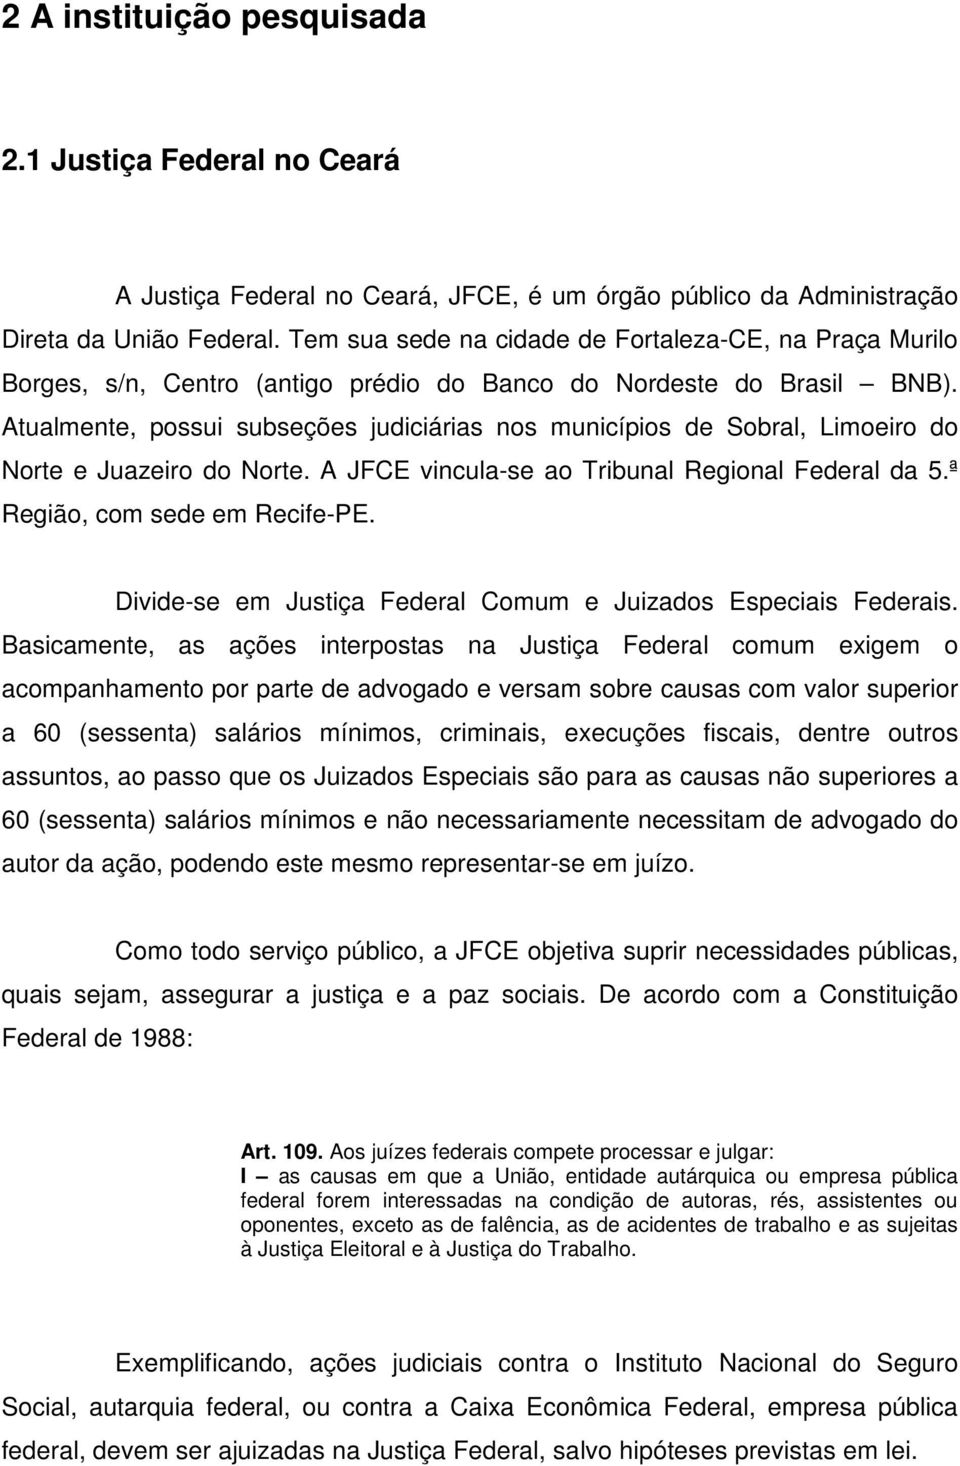 Atualmente, possui subseções judiciárias nos municípios de Sobral, Limoeiro do Norte e Juazeiro do Norte. A JFCE vincula-se ao Tribunal Regional Federal da 5.ª Região, com sede em Recife-PE.